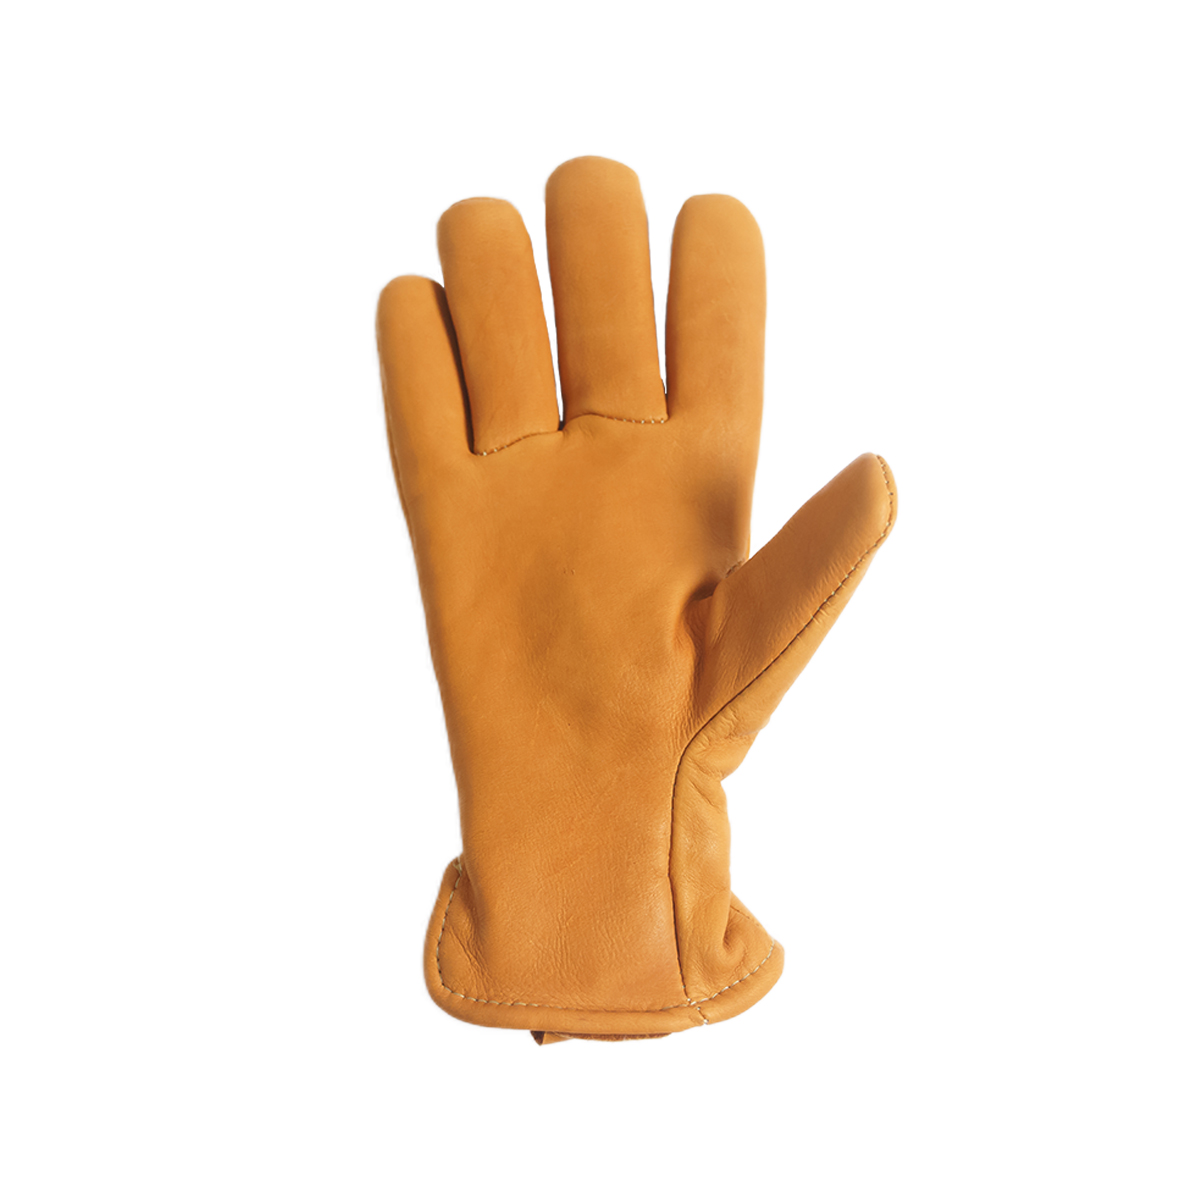 ガイヤーグローブ GEIER GLOVE #204ES ディアスキン レザーグローブ パイルライン 米国製 アメリカ製 Deerskin Glove  Pile Lined 革手袋